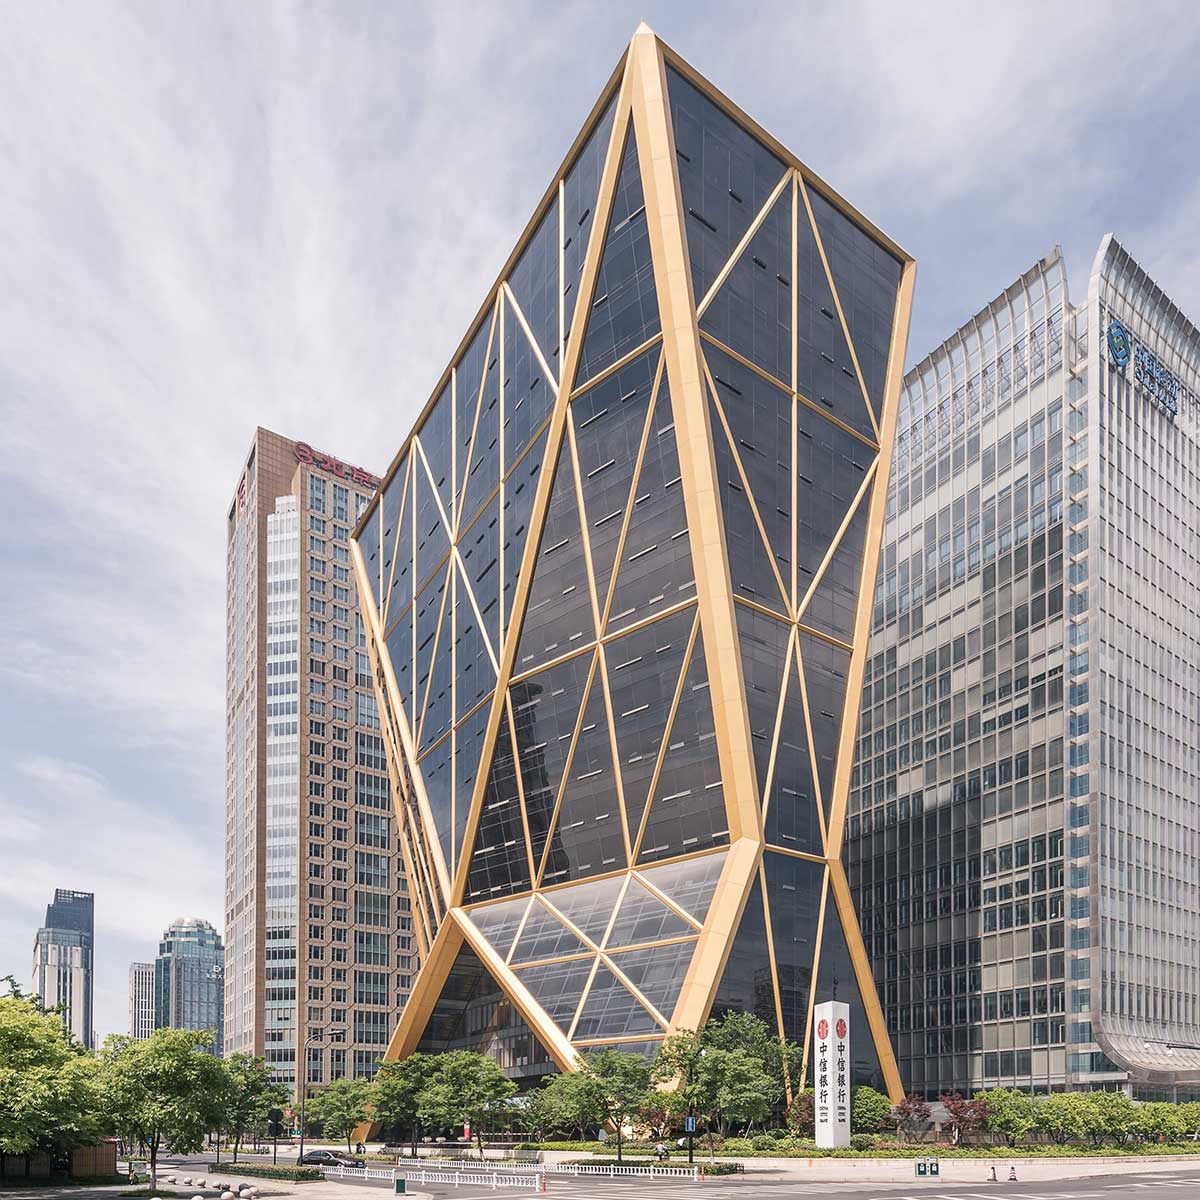 نماد فرهنگی چین باستان الهام بخش طراحی ساختمان بانک مرکزی "سیتیک" توسط نورمن فاستر